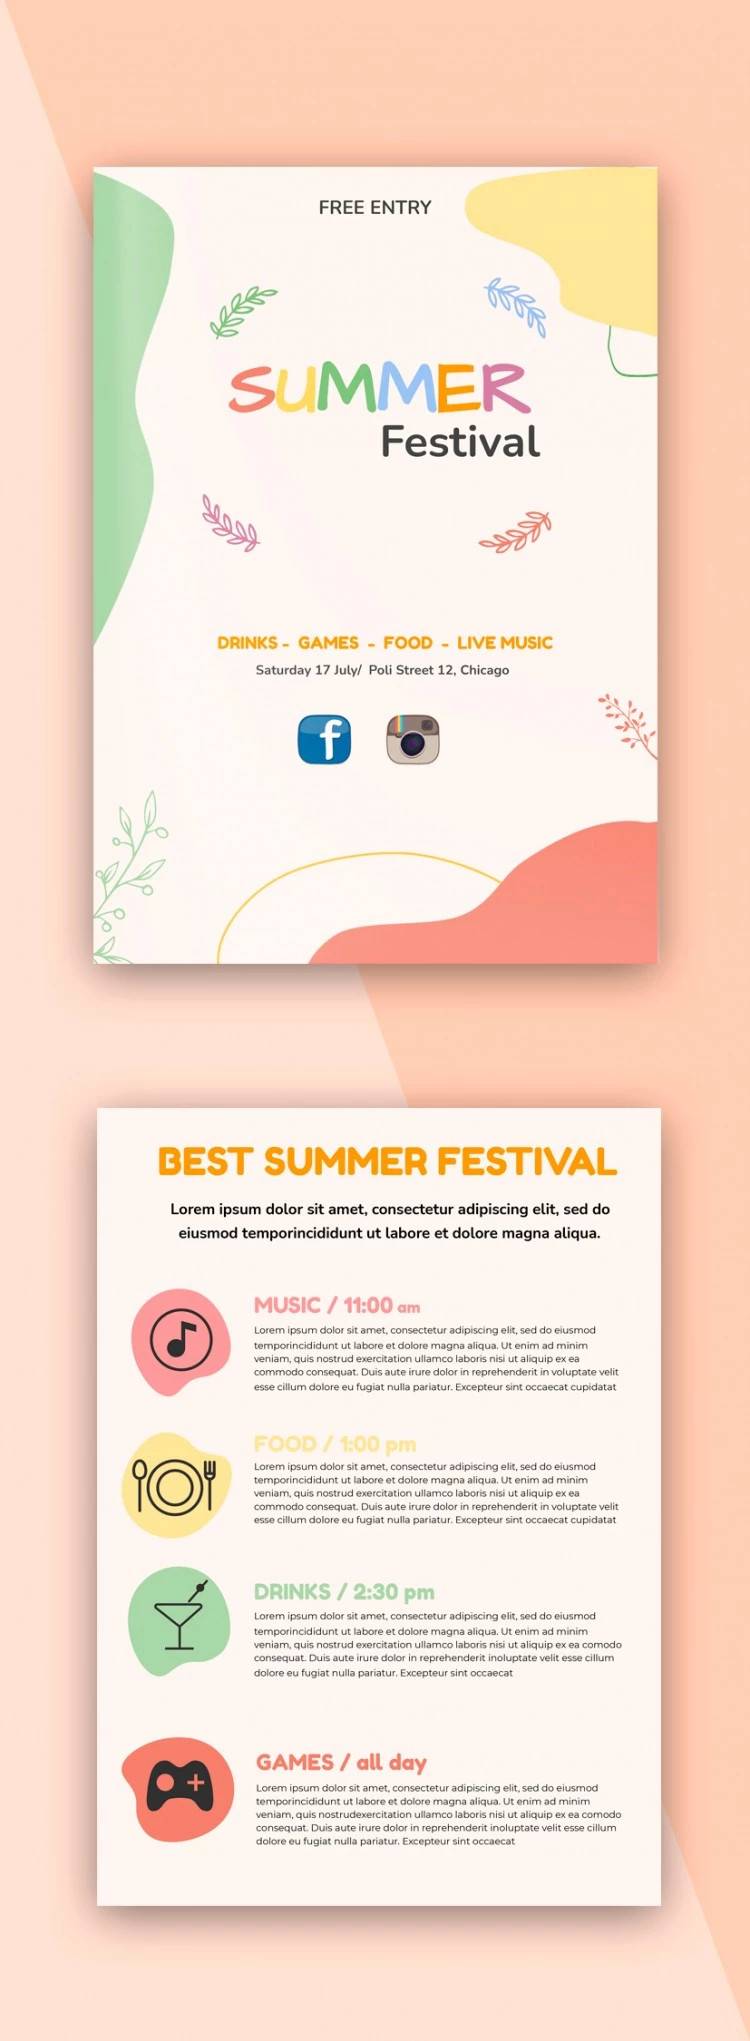 Folleto del Festival de Verano - free Google Docs Template - 10061682